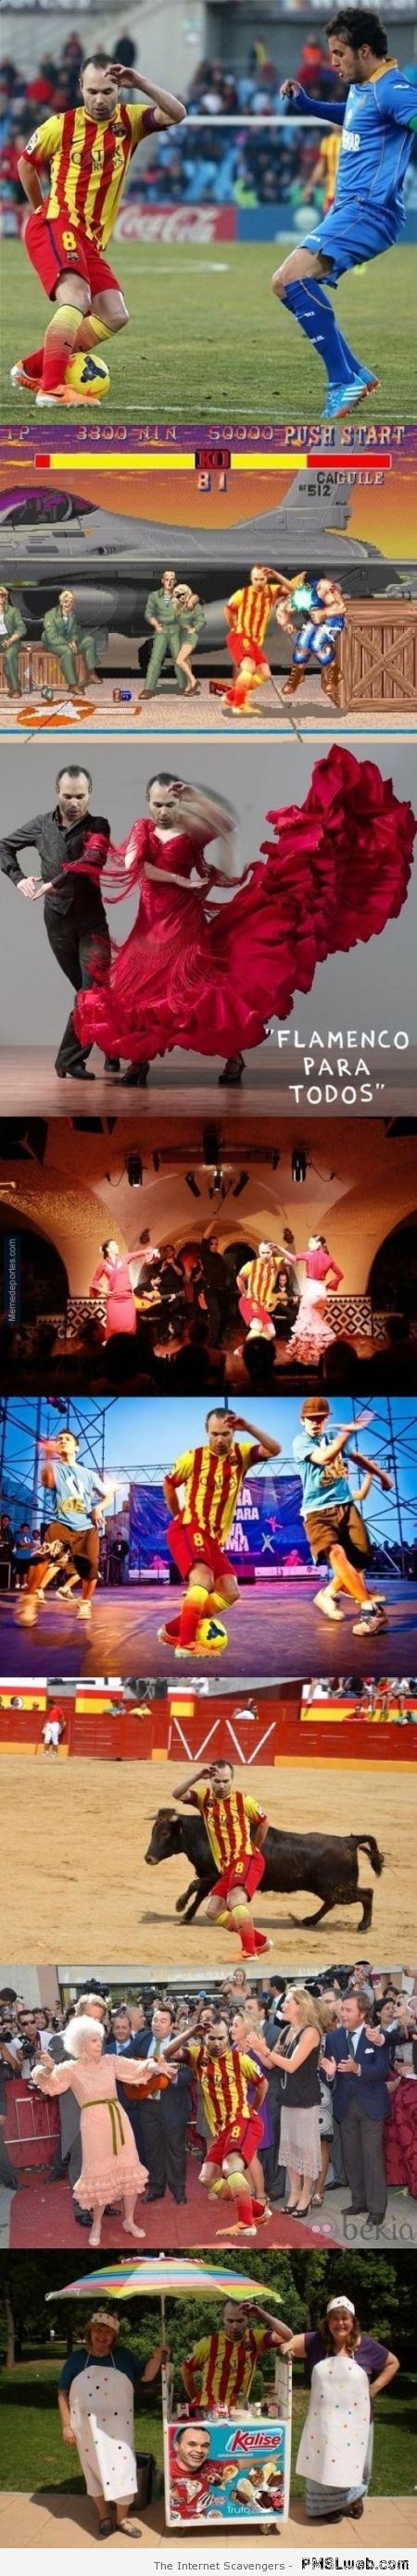 Iniesta is dancing meme at PMSLweb.com